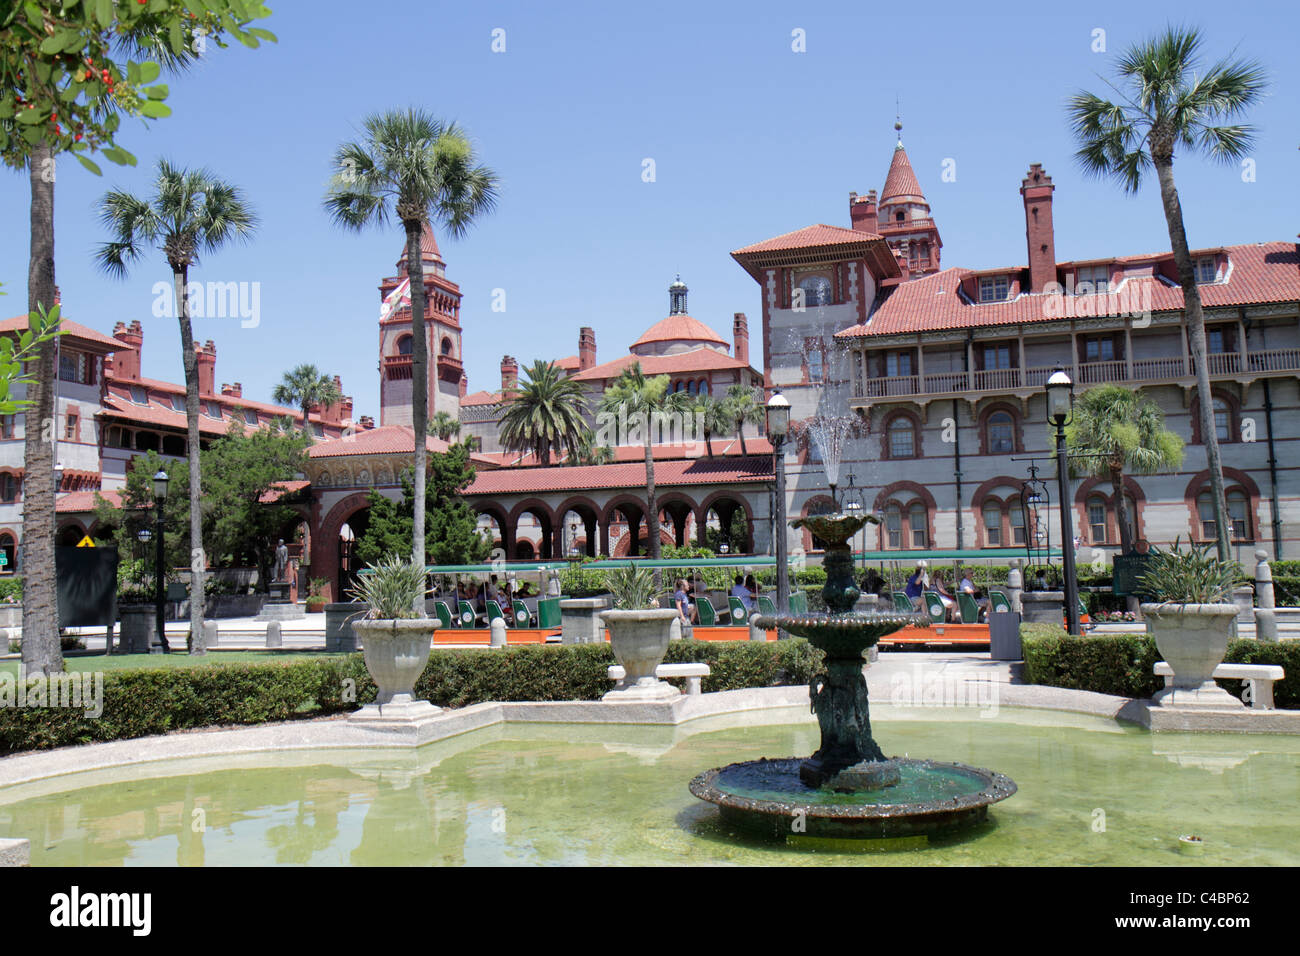 St. Saint Augustine Florida, Flagler College, ehemaliges Hotel Ponce de Leon, Altstädter Trolley, Brunnen, Gebäude, Besucher reisen Reisetouristen Stockfoto